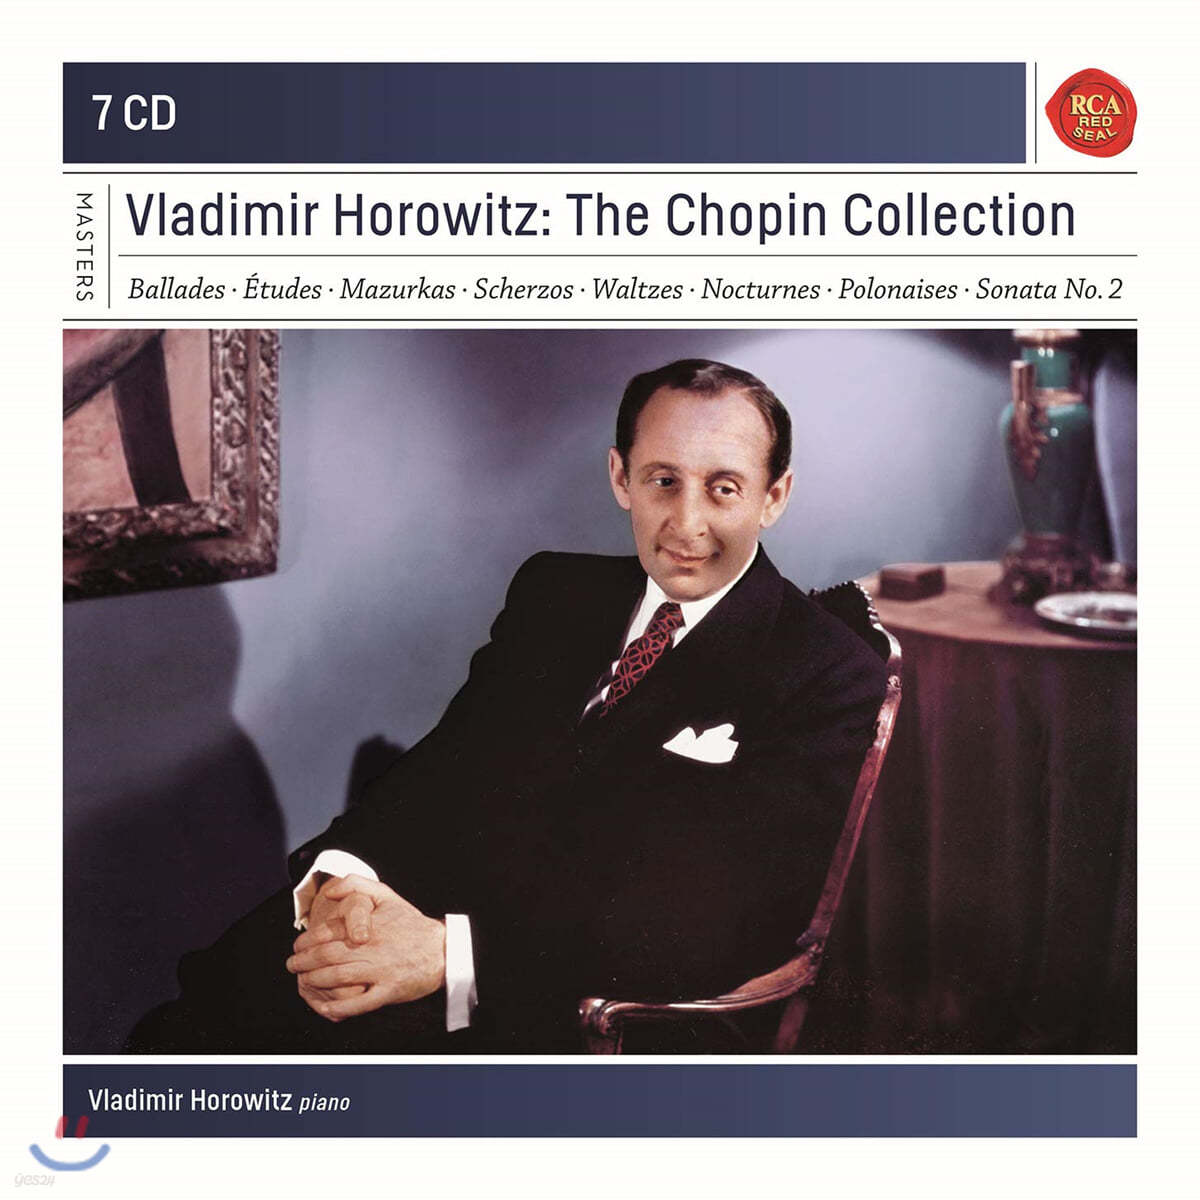 블라디미르 호로비츠 쇼팽 컬렉션 (Vladimir Horowitz: The Chopin Collection)